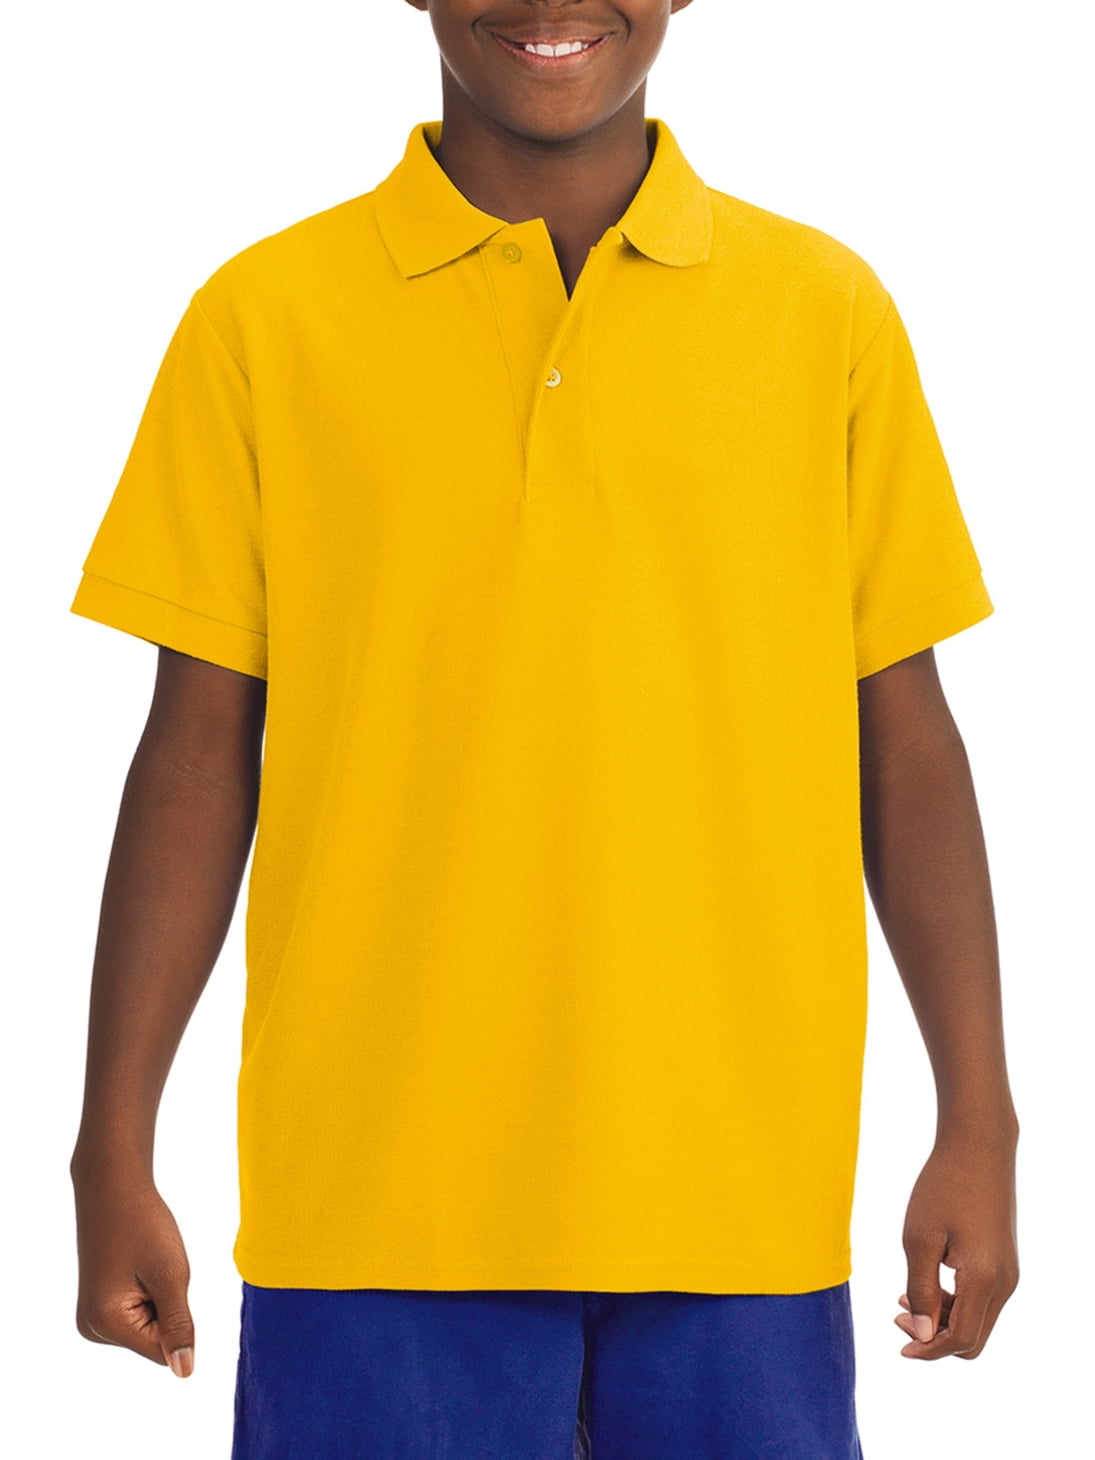 JRJZ Men's Seamless Polo Shirt